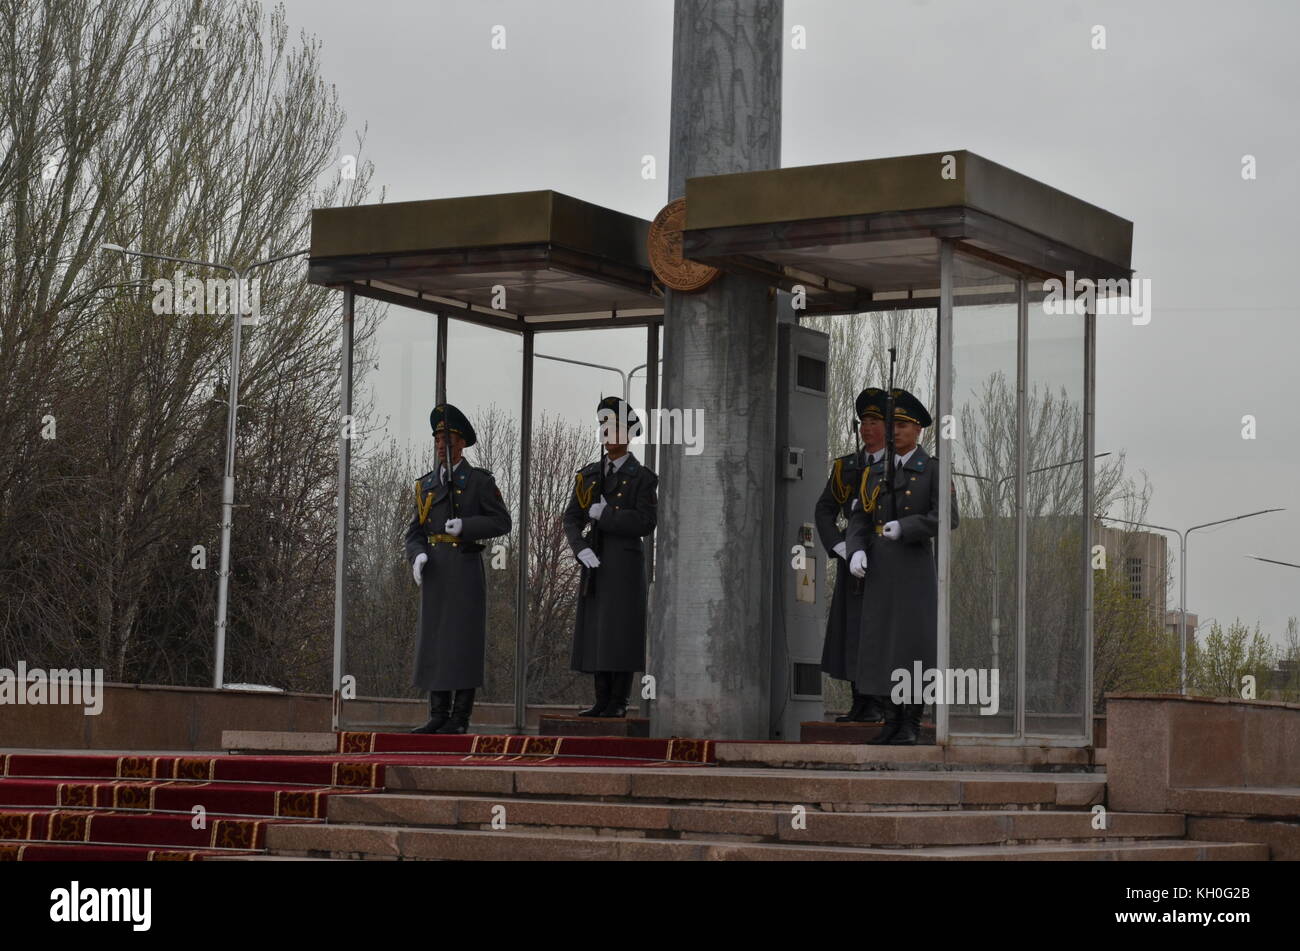 Cuatro guardias en uniforme con arma de pie junto a una enorme bandera polo con bandera nacional, Bishkek, Kirguistán, en Asia. Foto de stock